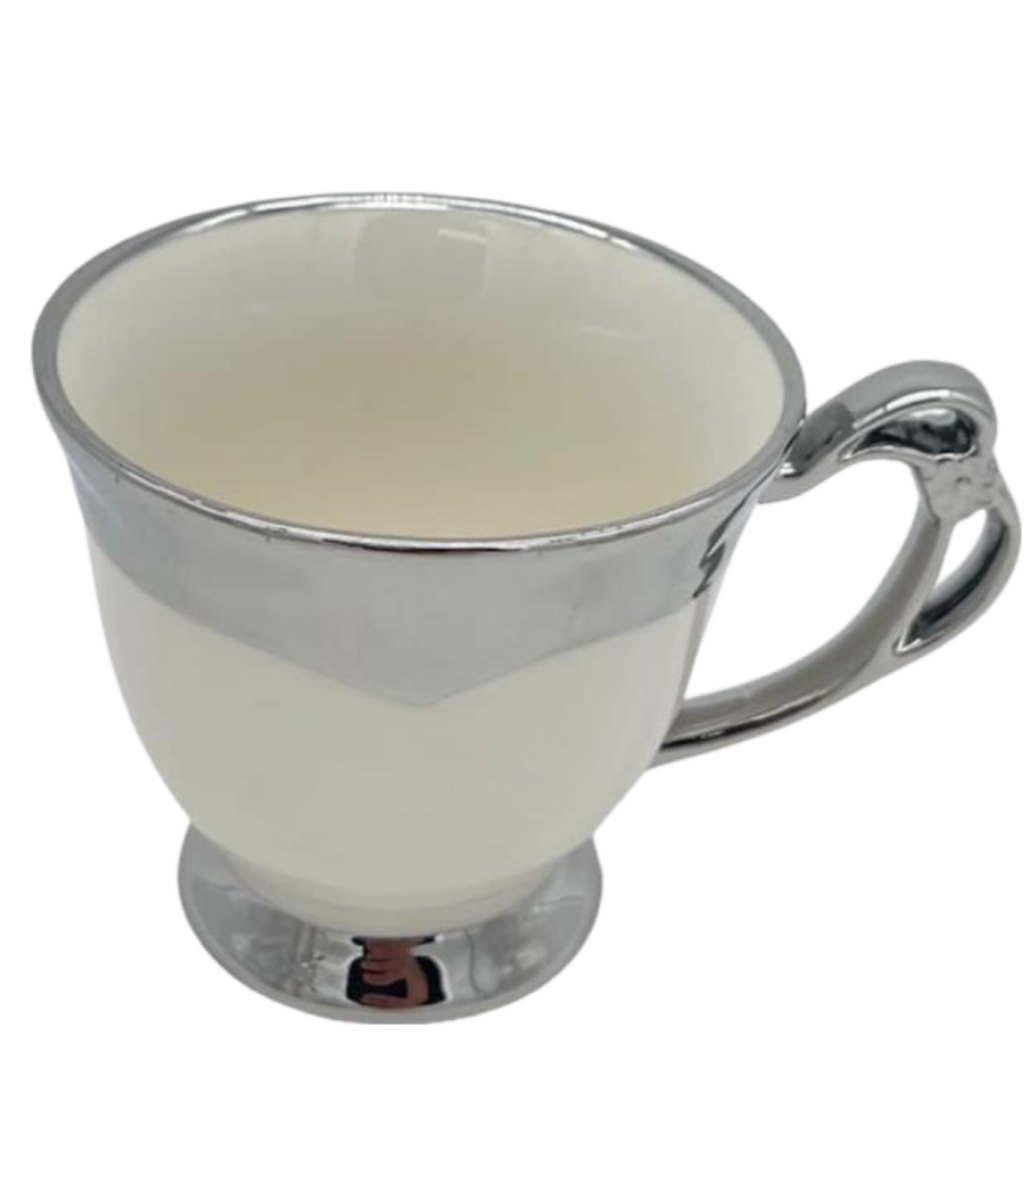 service à thé/Café avec plateau en porcelaine